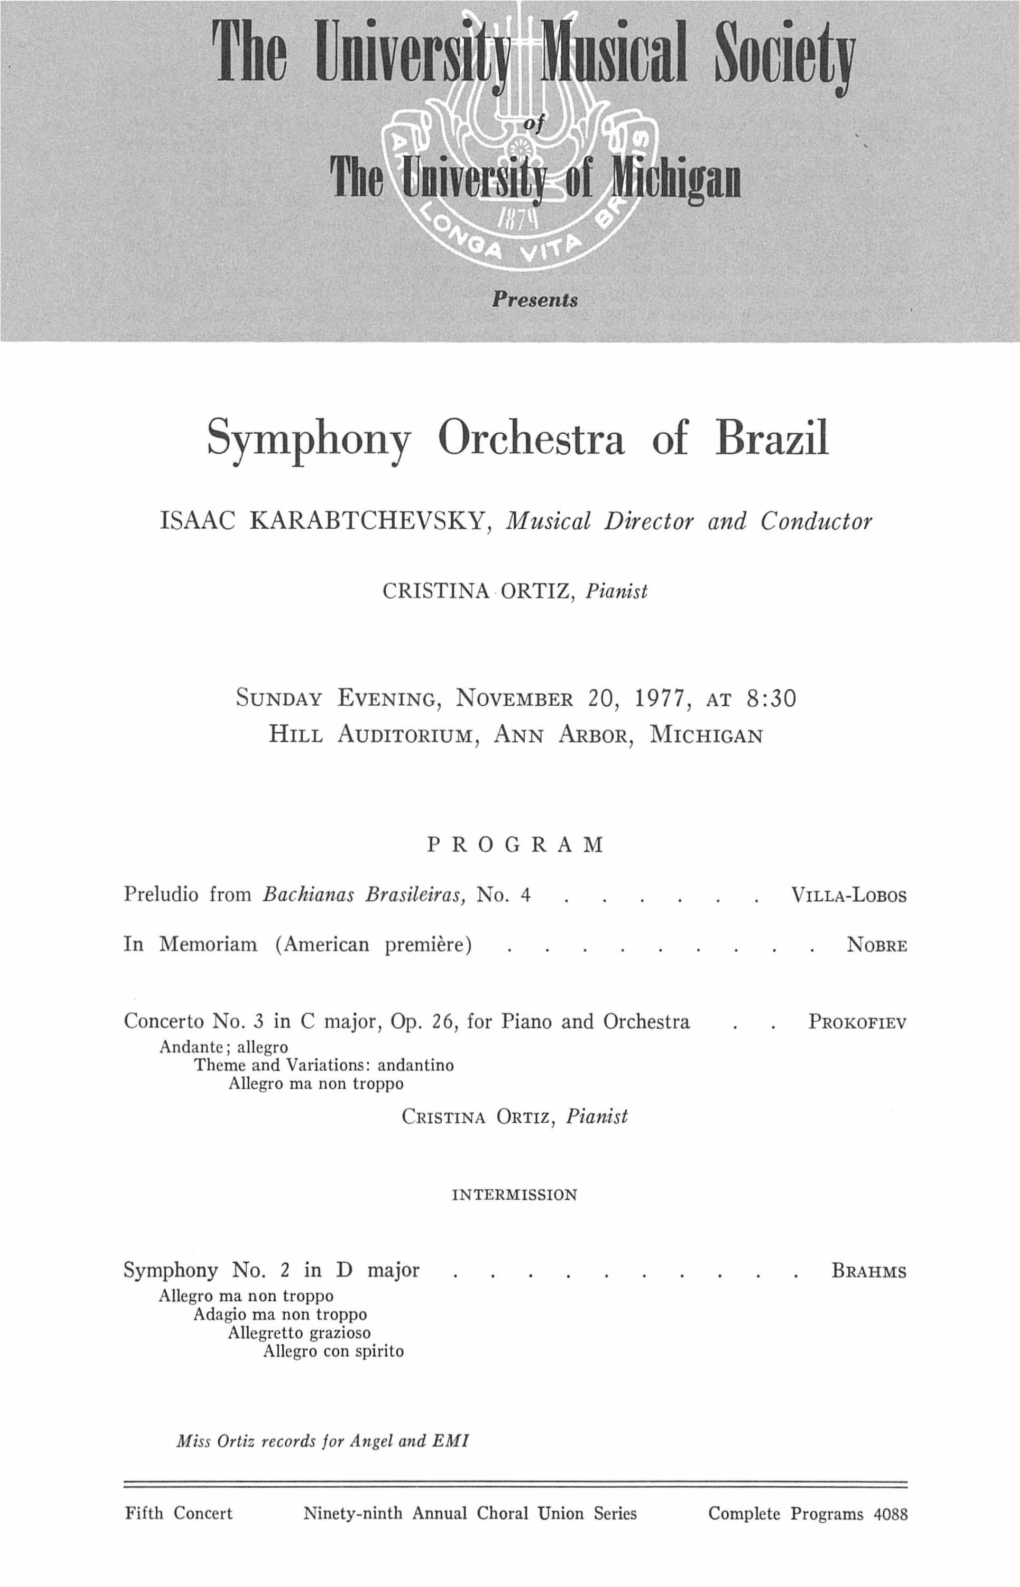 Symphony Orchestra of Brazil